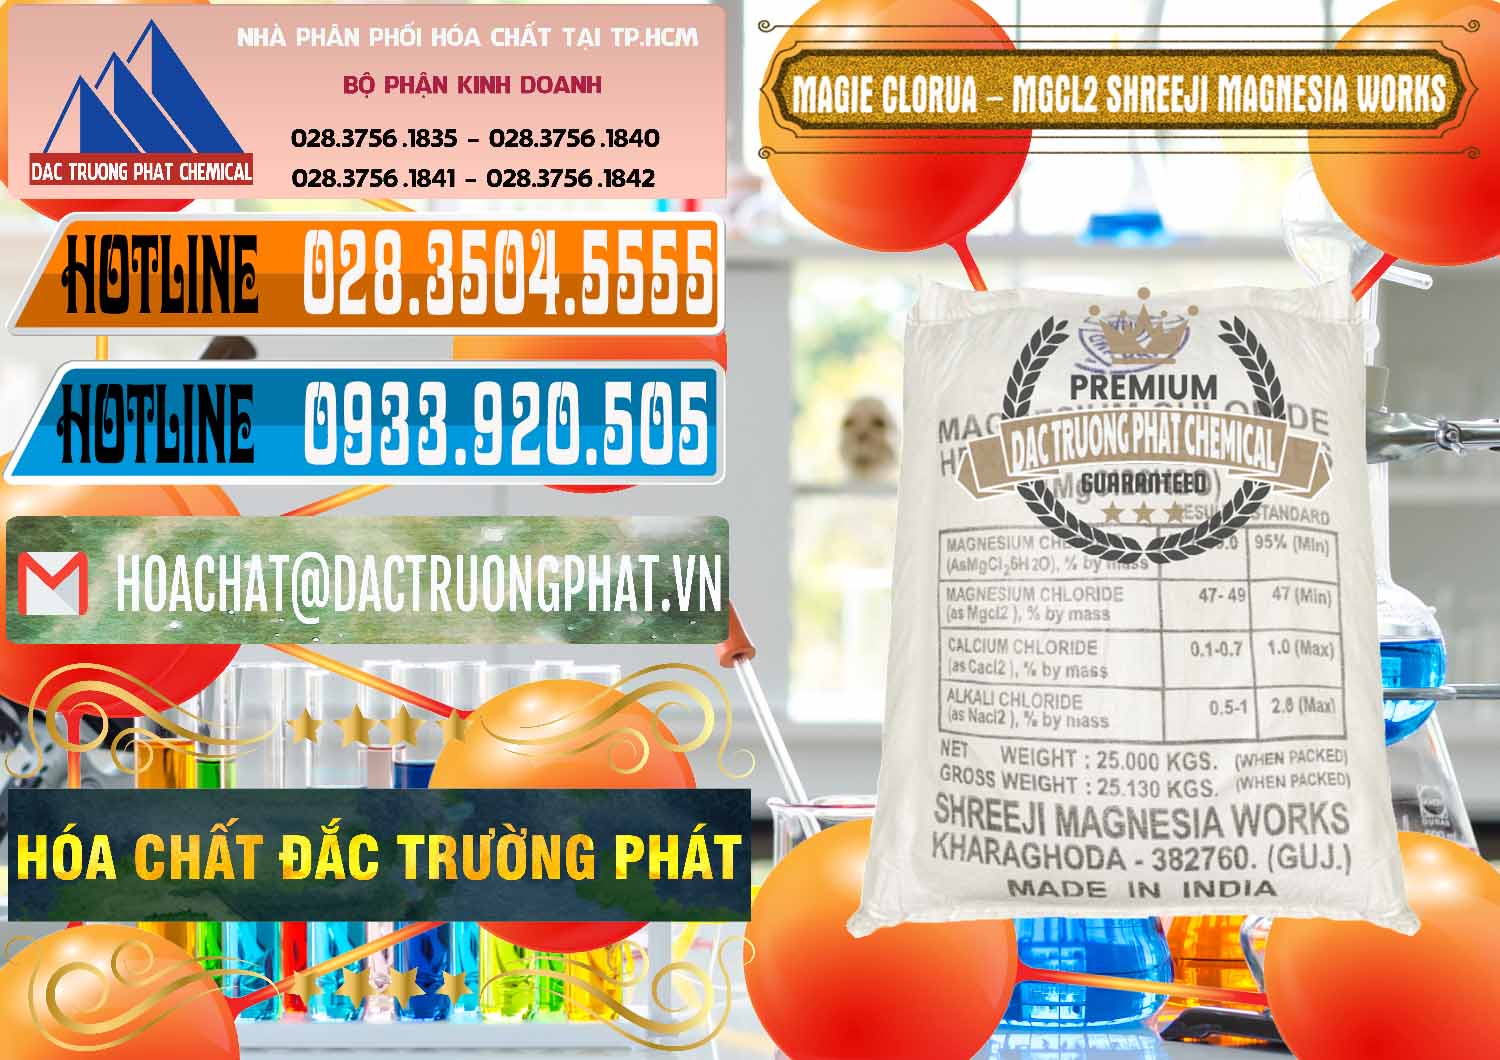 Chuyên cung cấp & bán Magie Clorua – MGCL2 Dạng Vảy Shreeji Magnesia Works Ấn Độ India - 0285 - Đơn vị chuyên phân phối và bán hóa chất tại TP.HCM - stmp.net